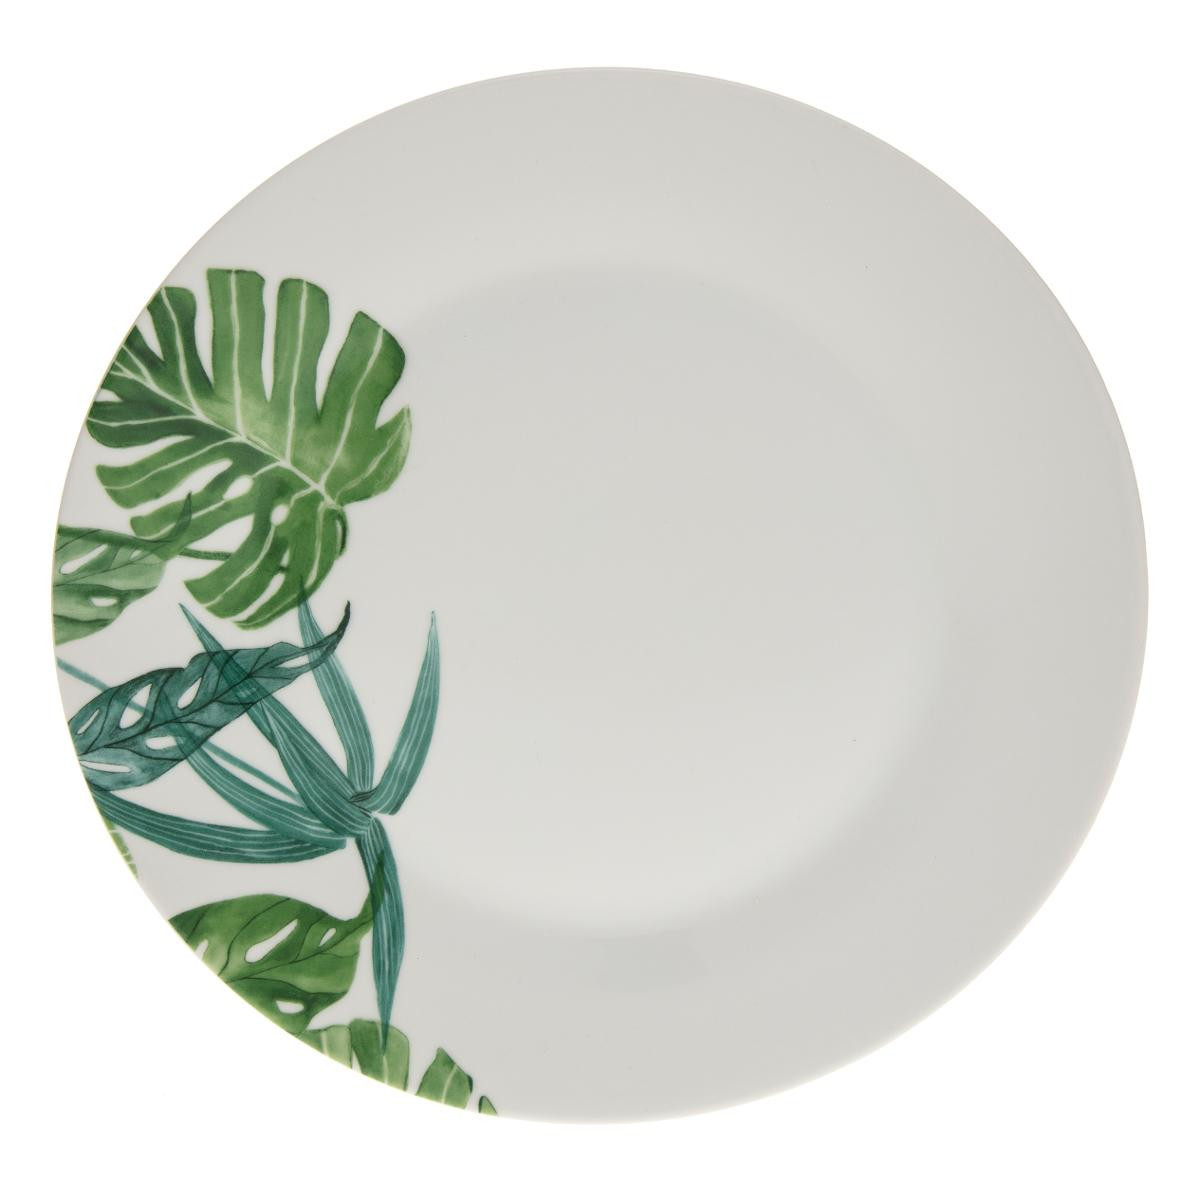 https://www.decomania.fr/693396-product_hd/assiette-plate-en-porcelaine-d-27-cm-decor-tropical.jpg